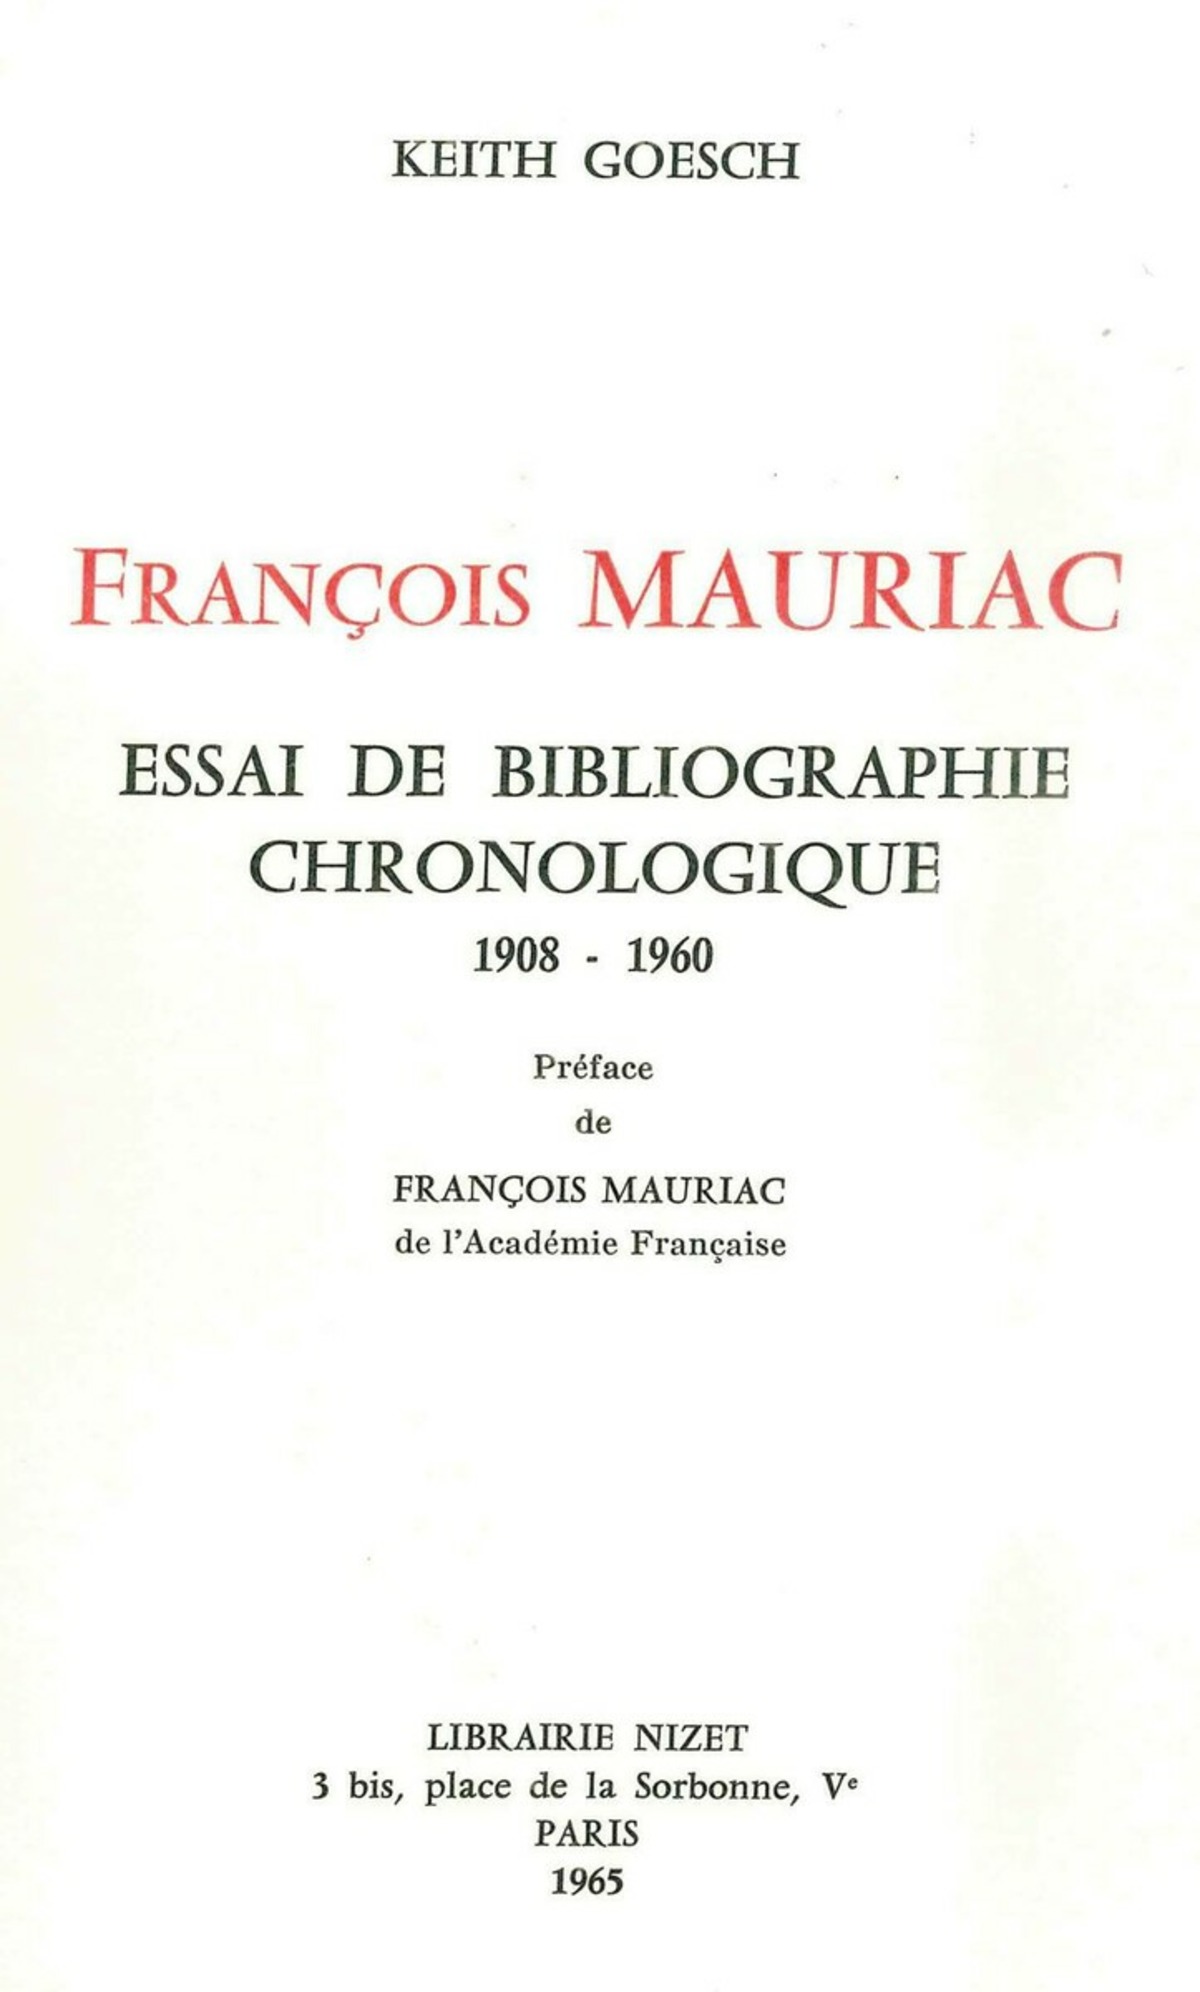 François Mauriac: essai de bibliographie chronologique (1908-1960)